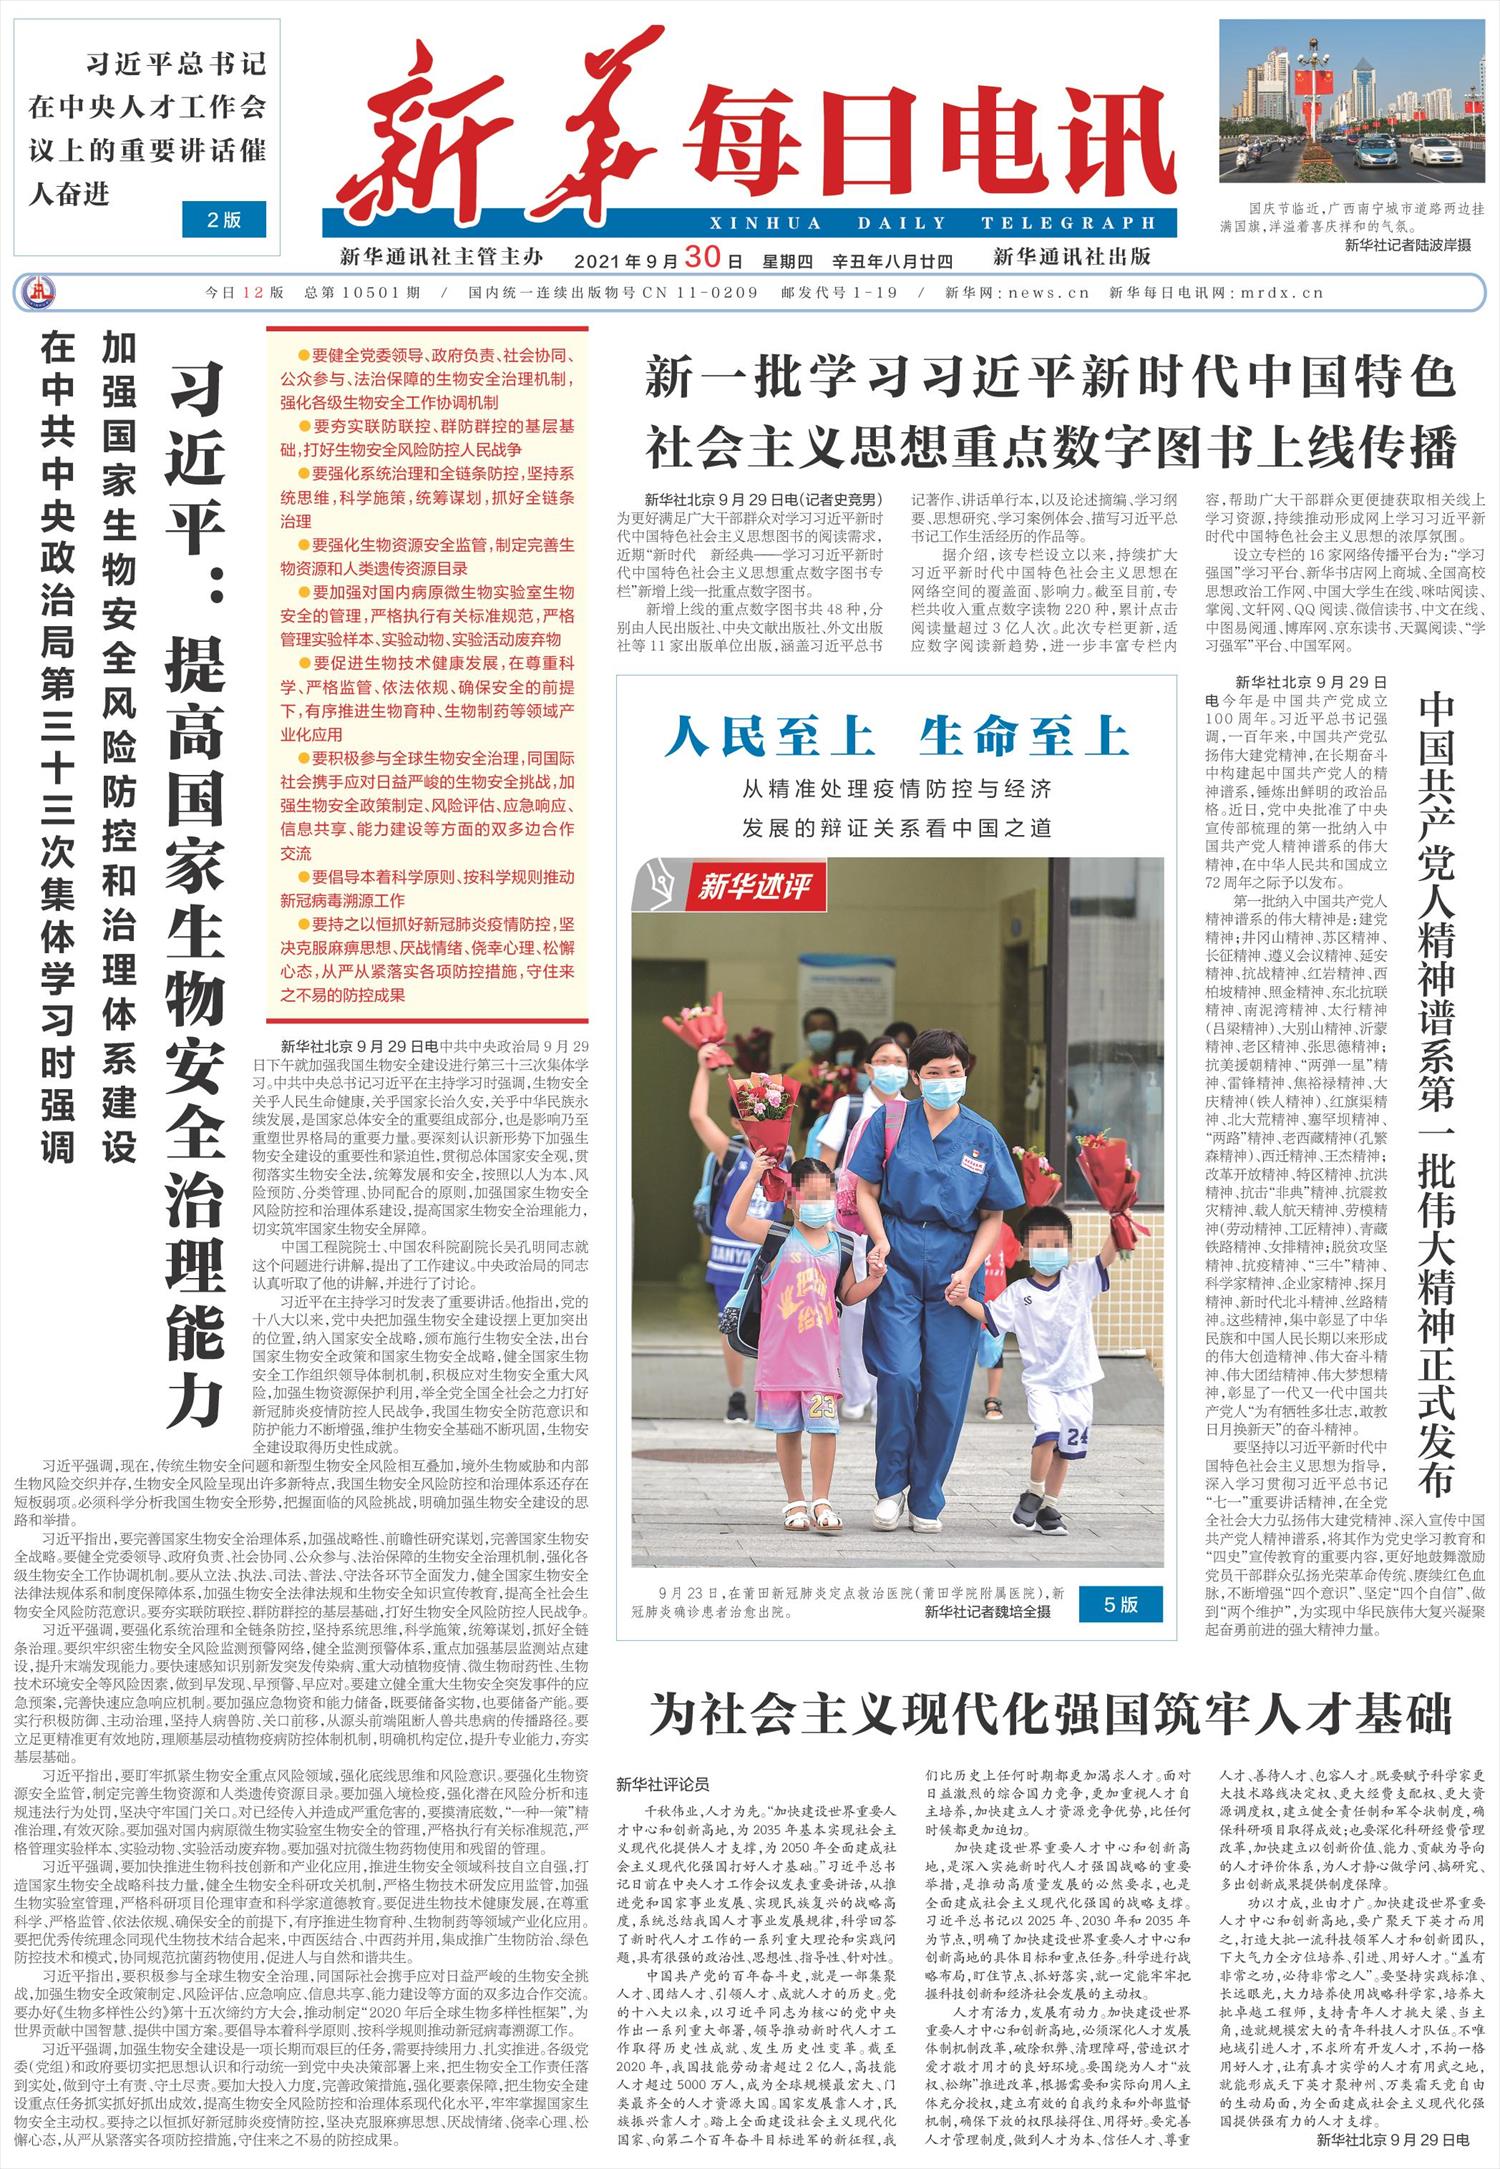 新华每日电讯 微报纸 月日